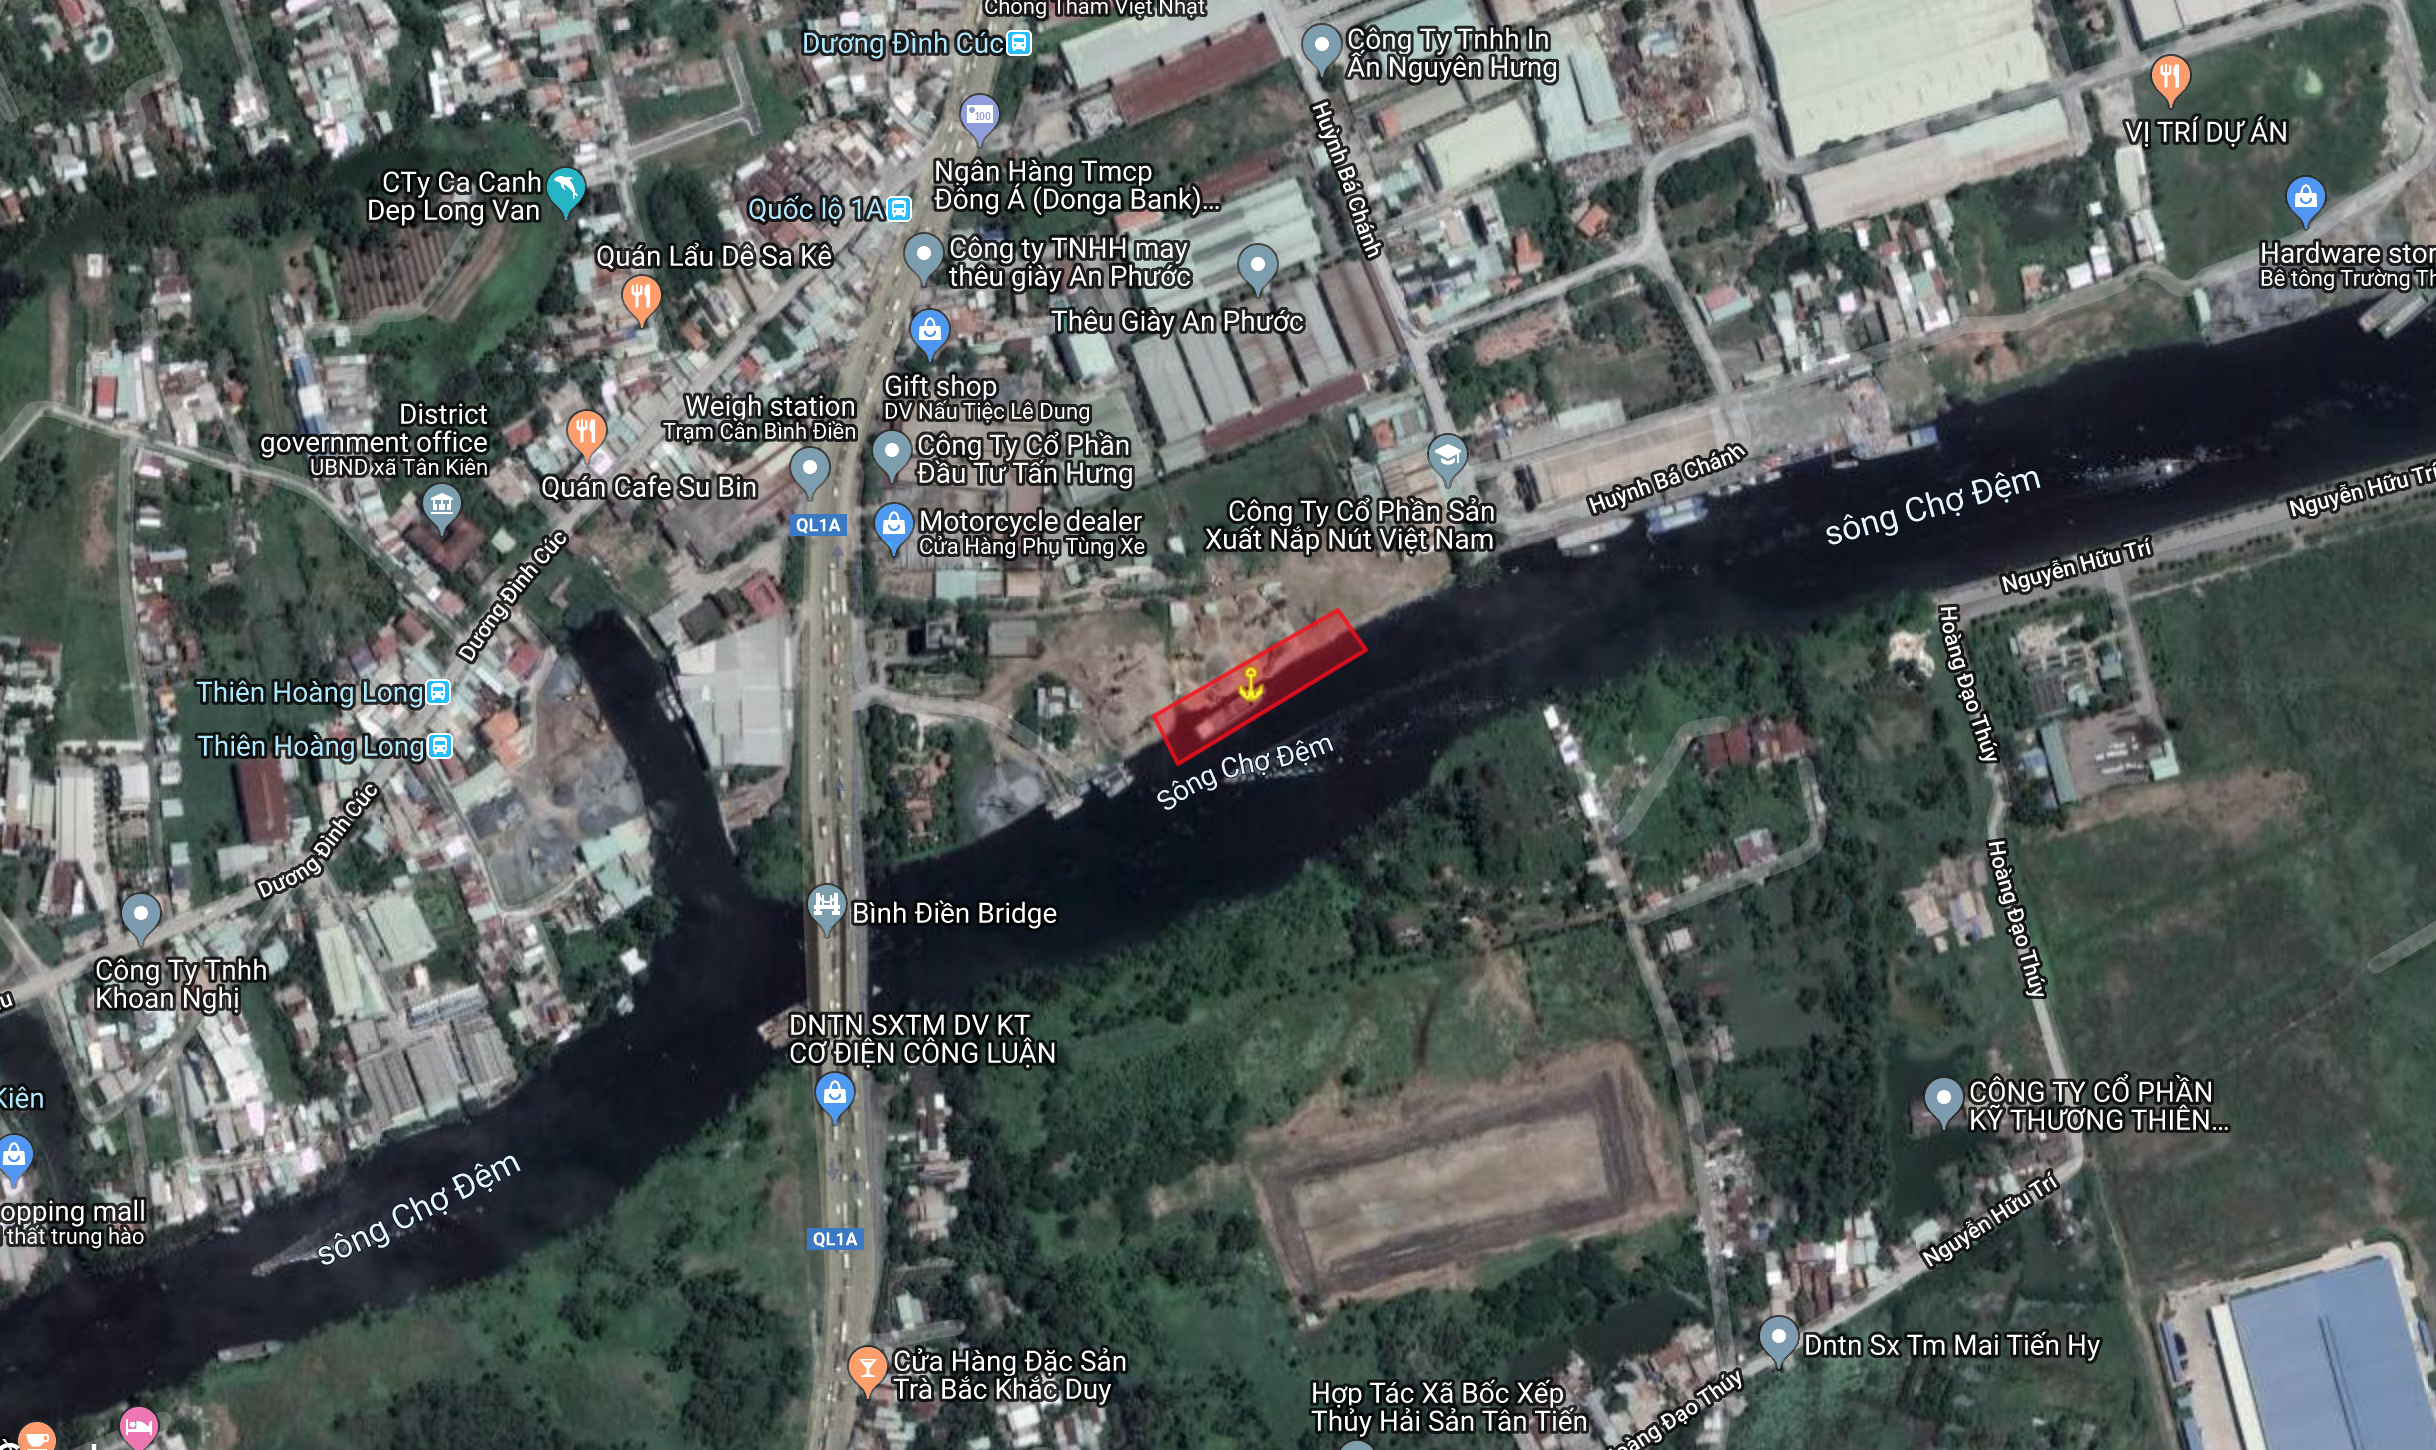 HCM | Cảng An Phước Xã Tân Kiên,Huyện Bình Chánh,Tp.HCM | Bán cảng đường thuỷ | Cảng Sông